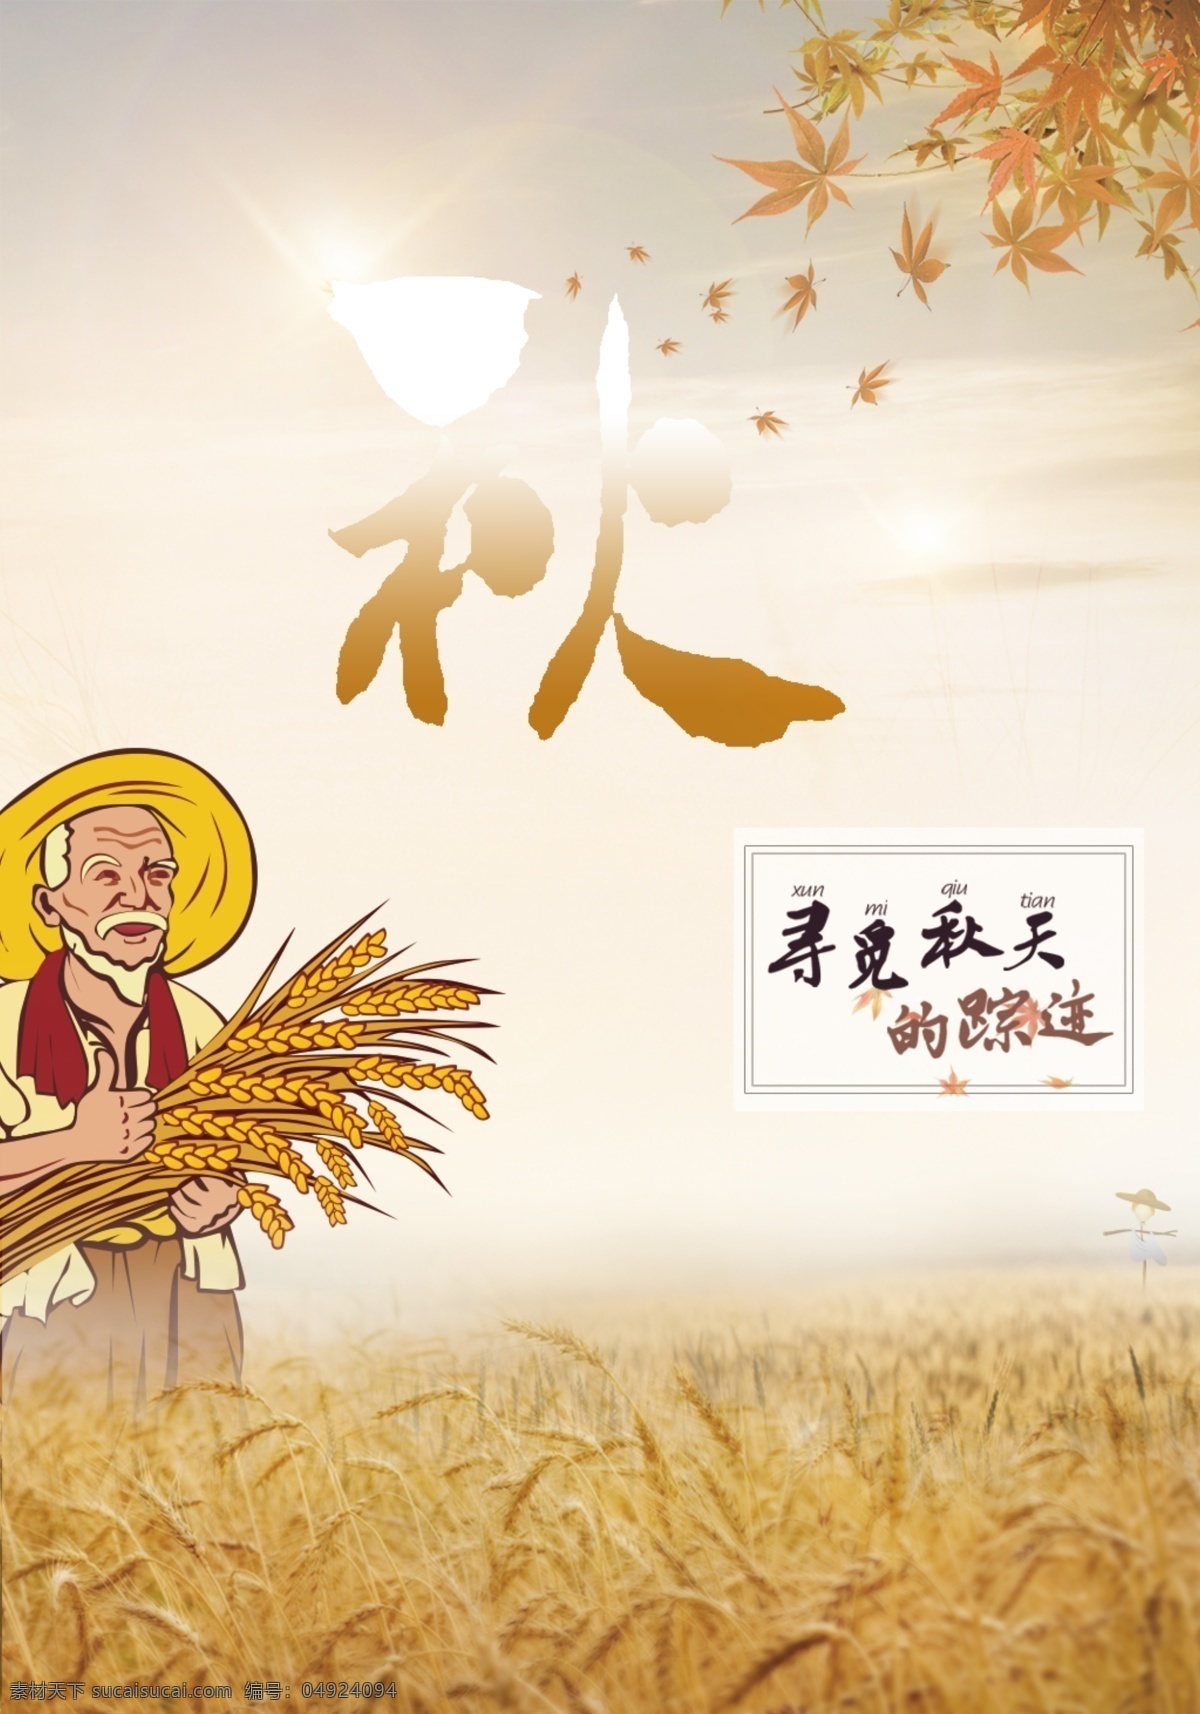 秋天 宣传海报 设计素材 秋 丰收 麦穗 收货 枫叶